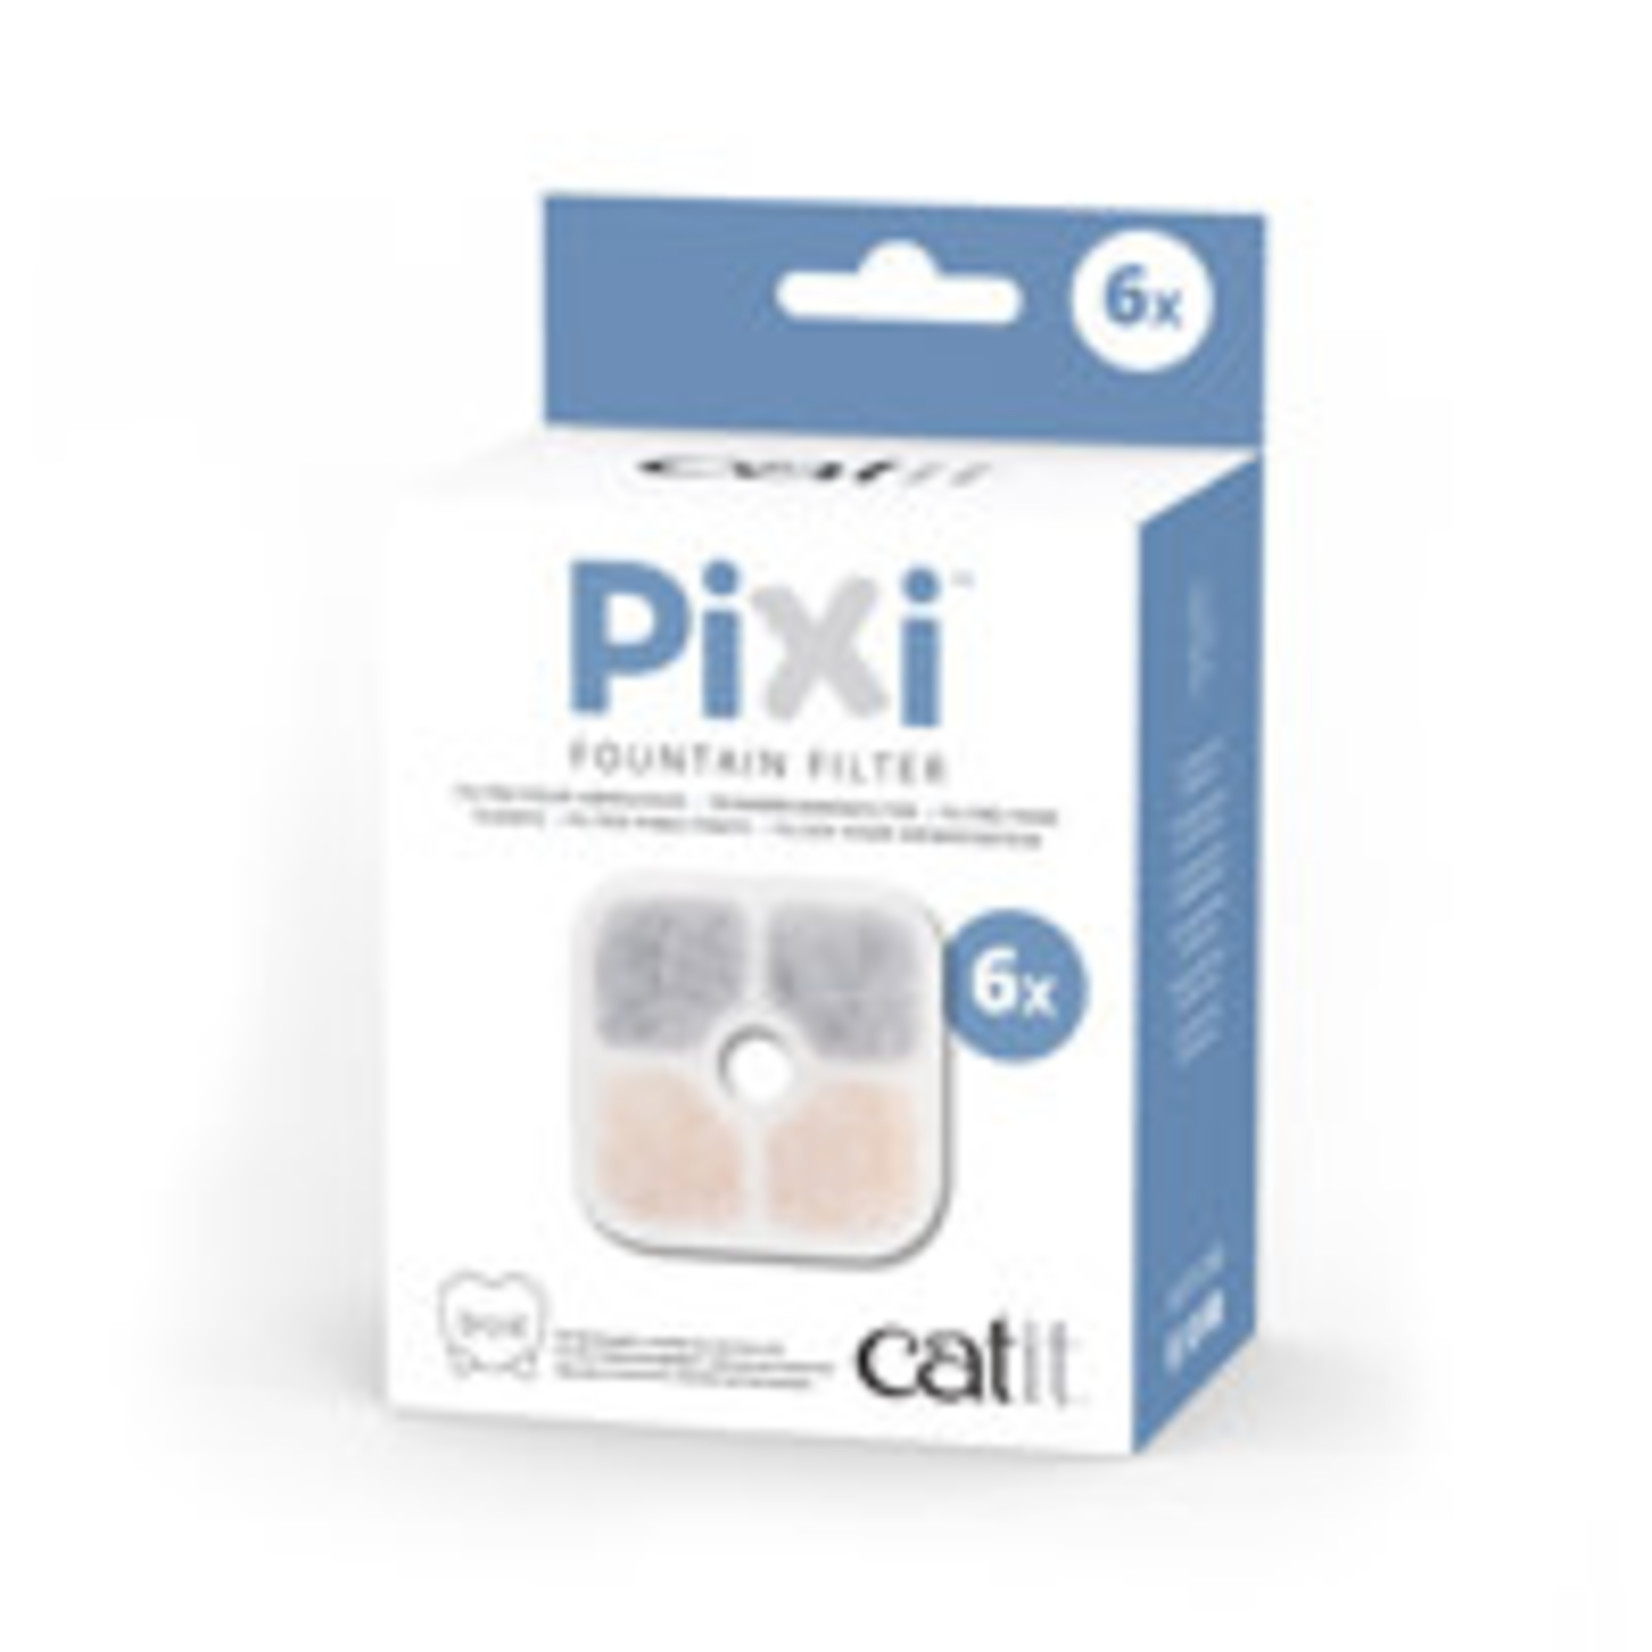 Catit Catit Pixi Fountain Cartridge, 6-pack